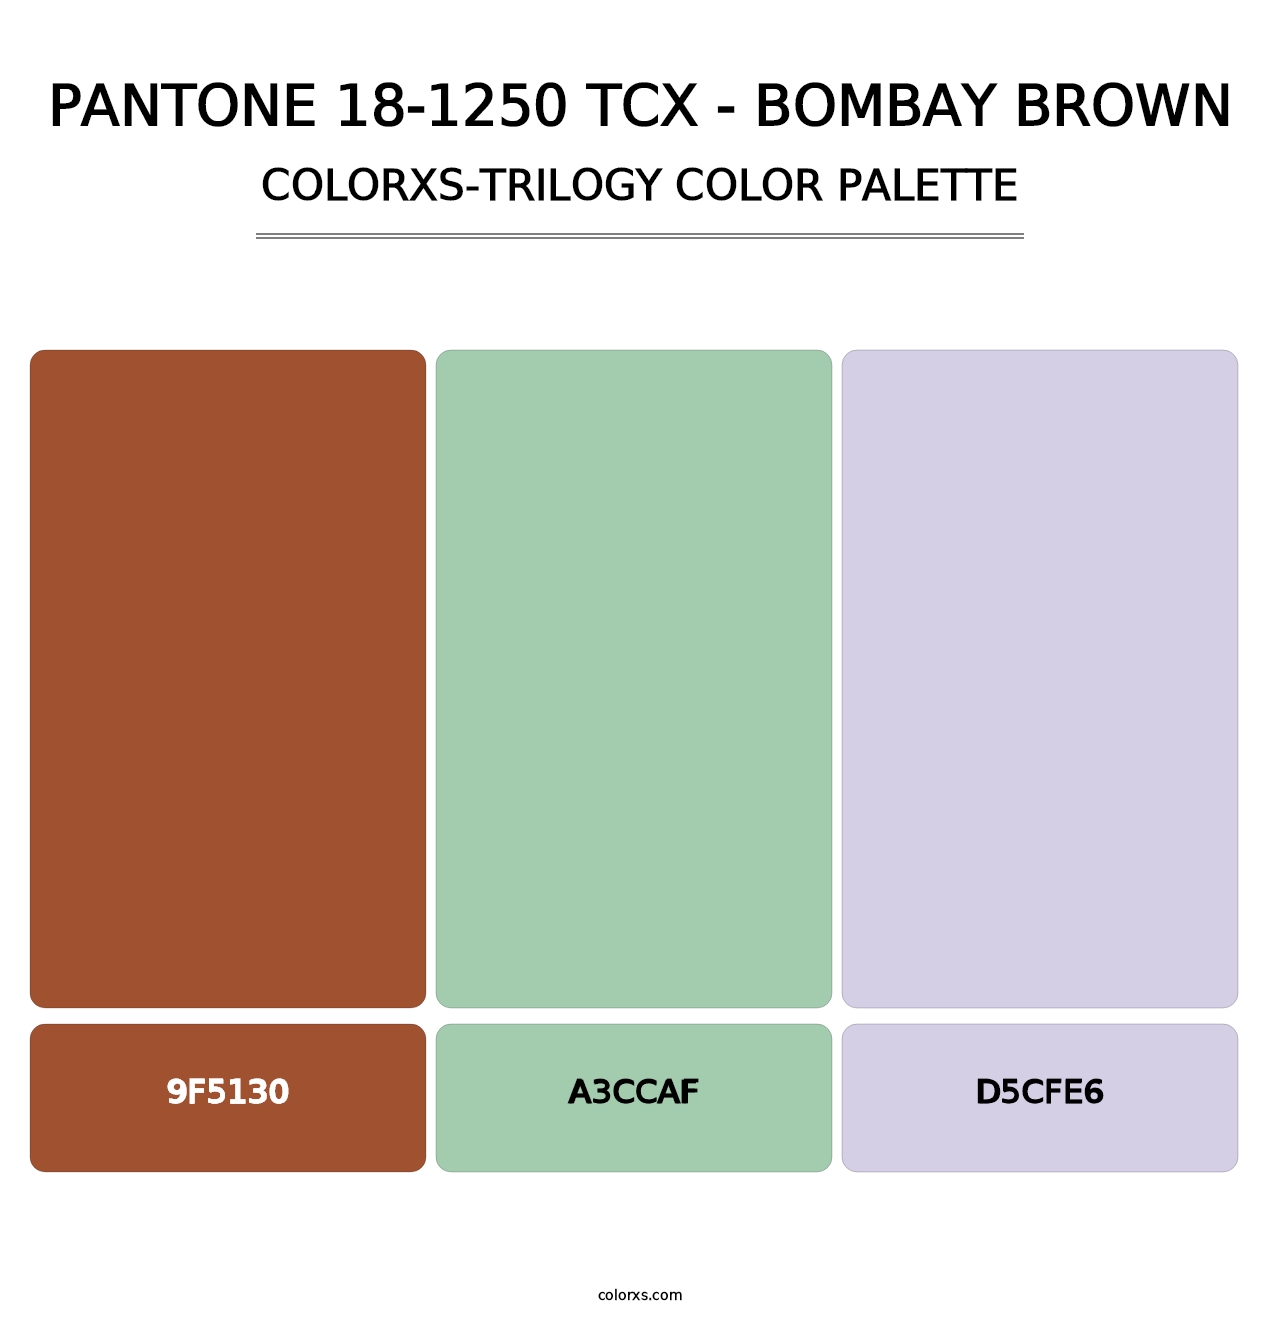 PANTONE 18-1250 TCX - Bombay Brown - Colorxs Trilogy Palette